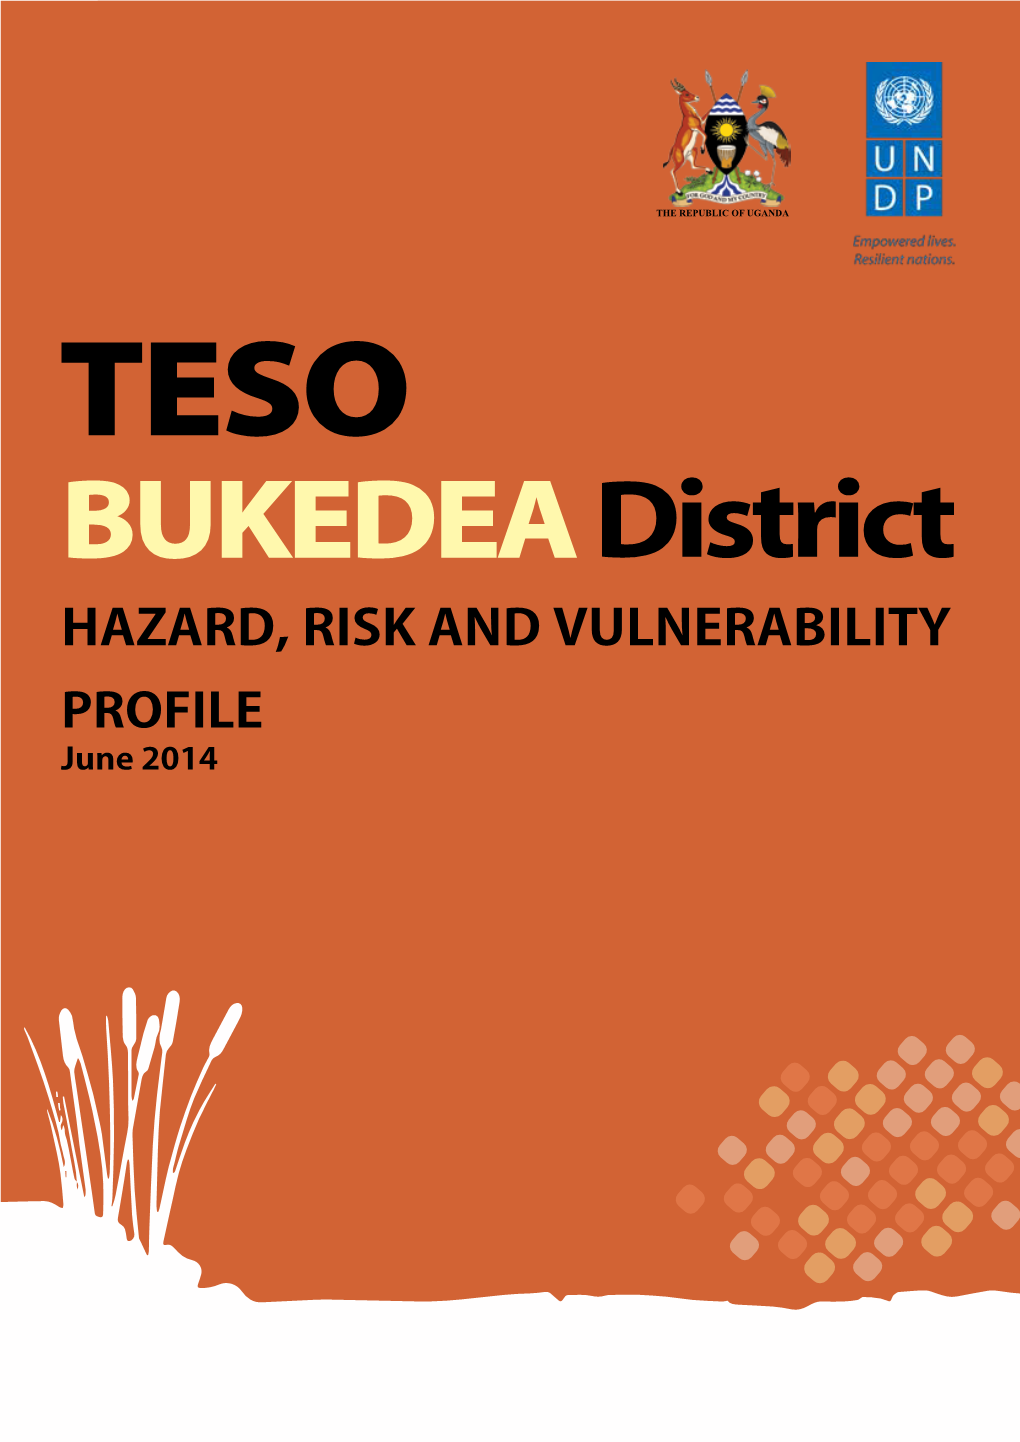 The Republic of Uganda TESO Bukedea District Hazard, Risk and Vulnerability Profile June 2014